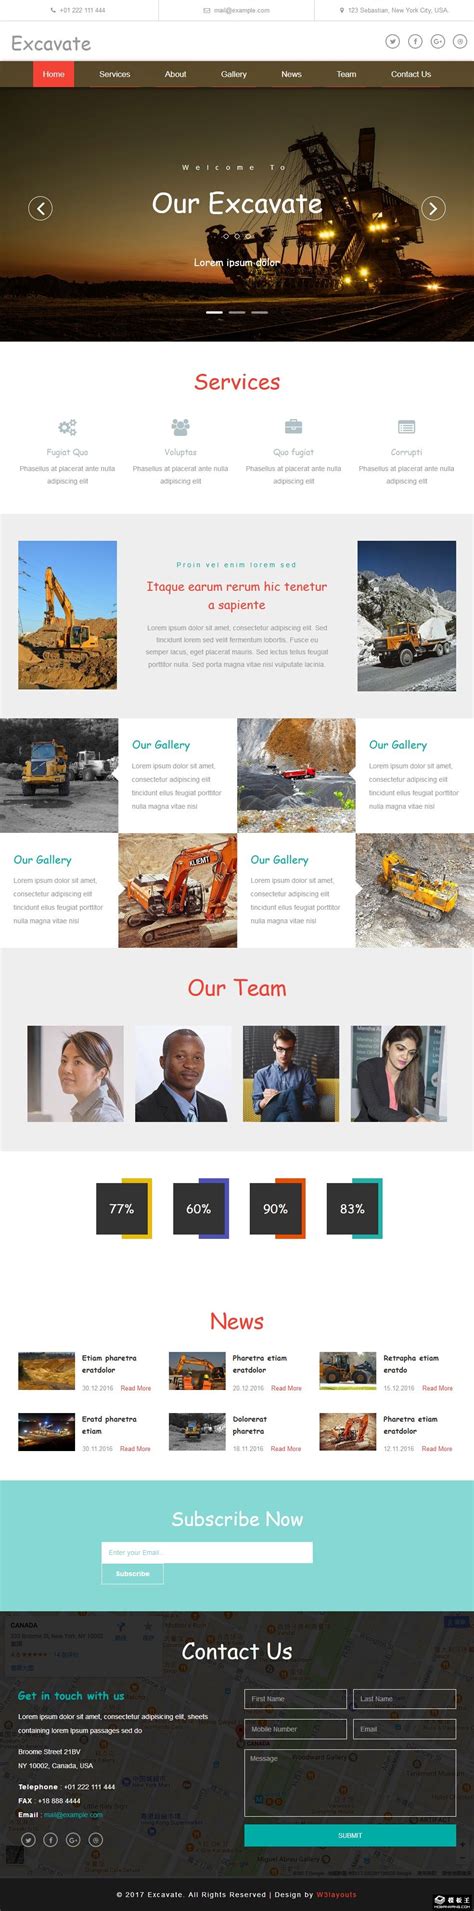 石岩网站建设公司_石岩网站设计_石岩做网站_石岩软件开发公司